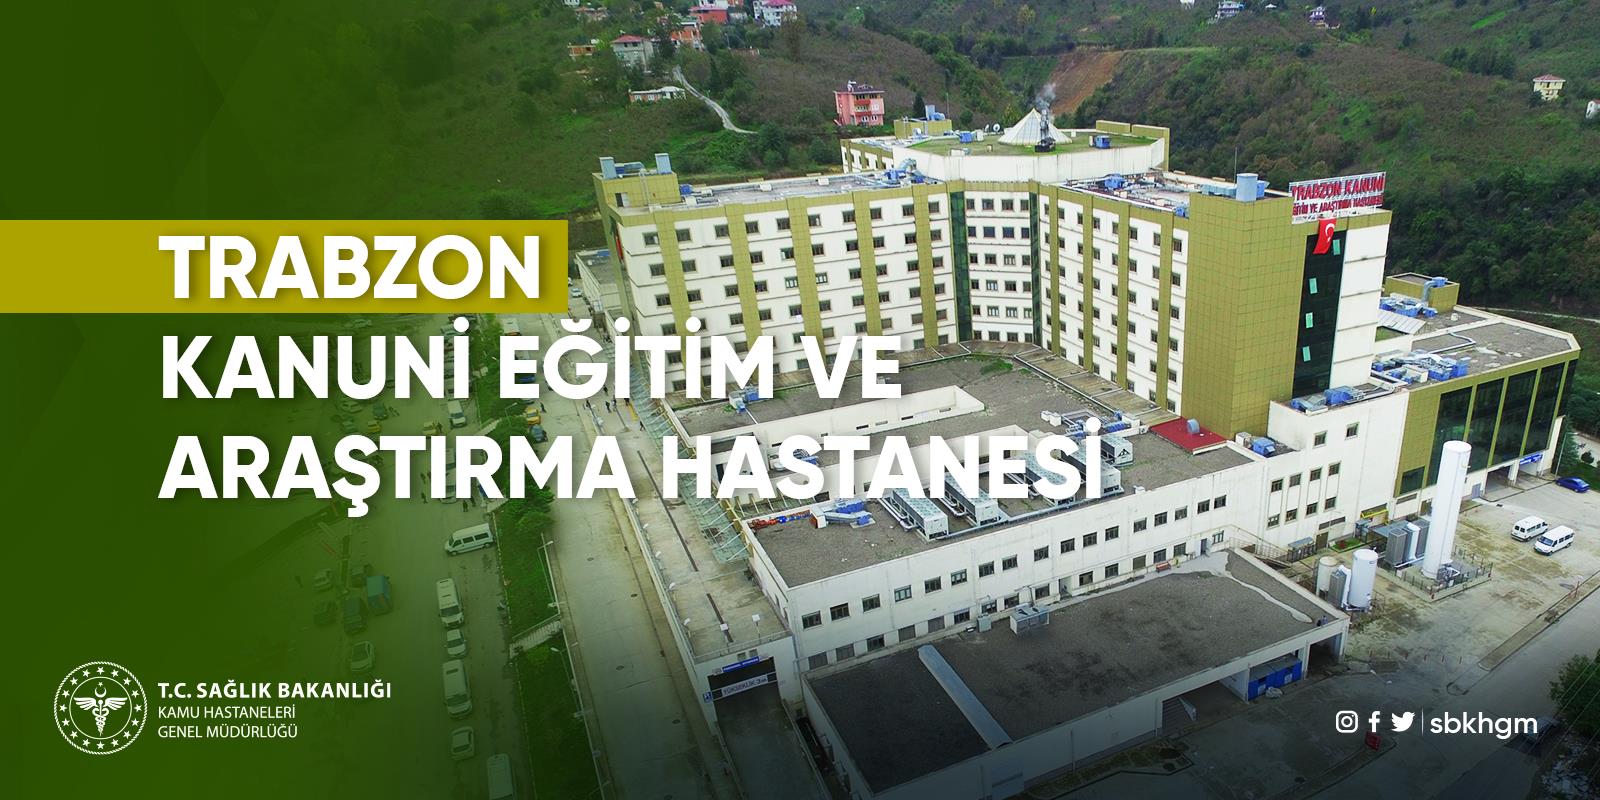 T.C. Sağlık Bakanlığı Trabzon Kanuni Eğitim ve Araştırma Hastanesi